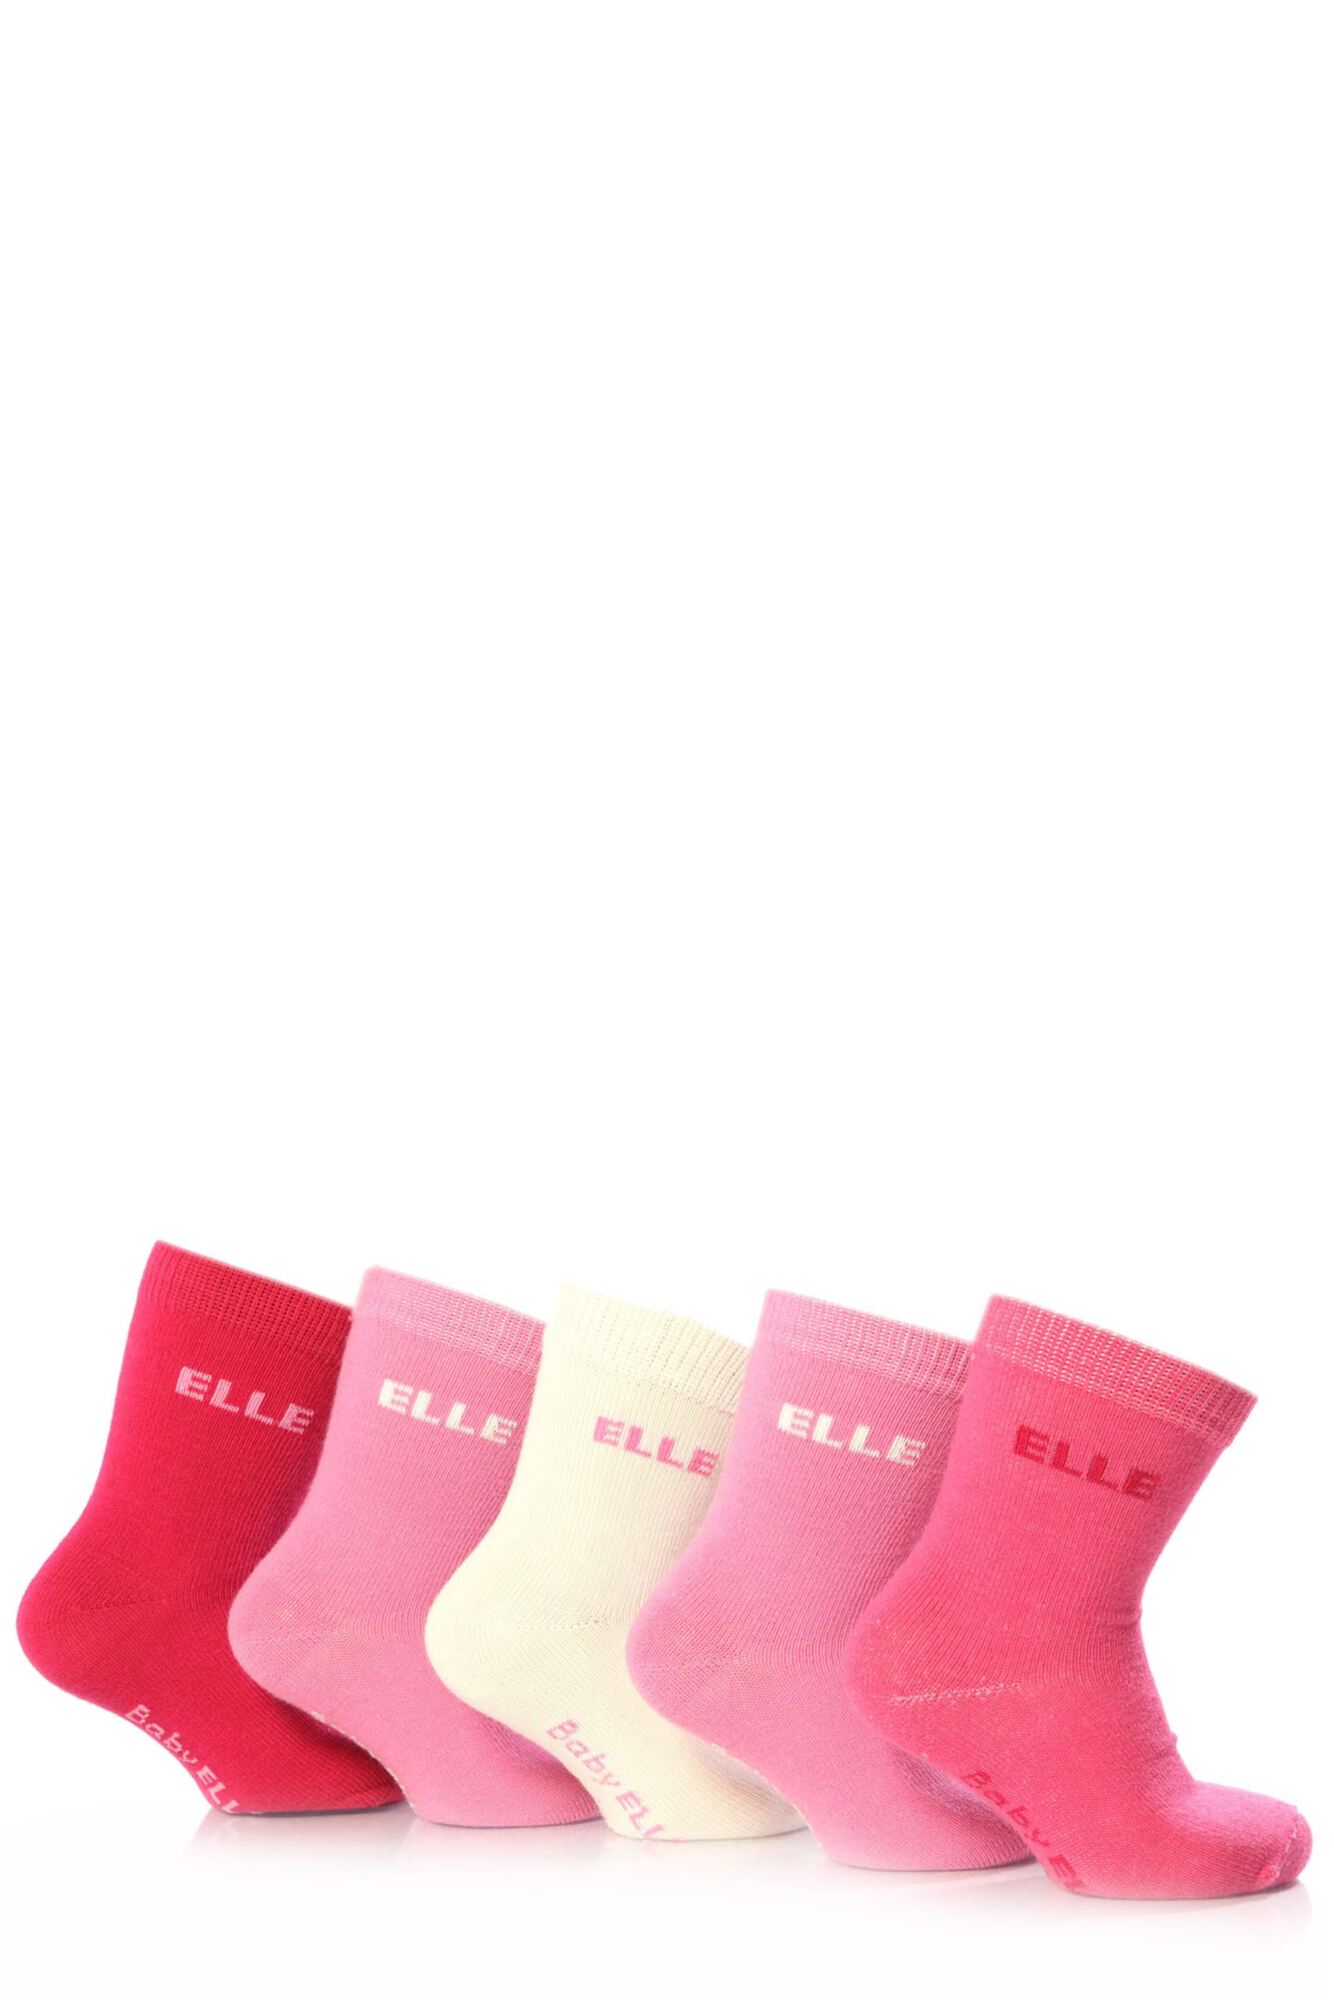 5 Pair Baby Pink Plain Socks Girls - Elle